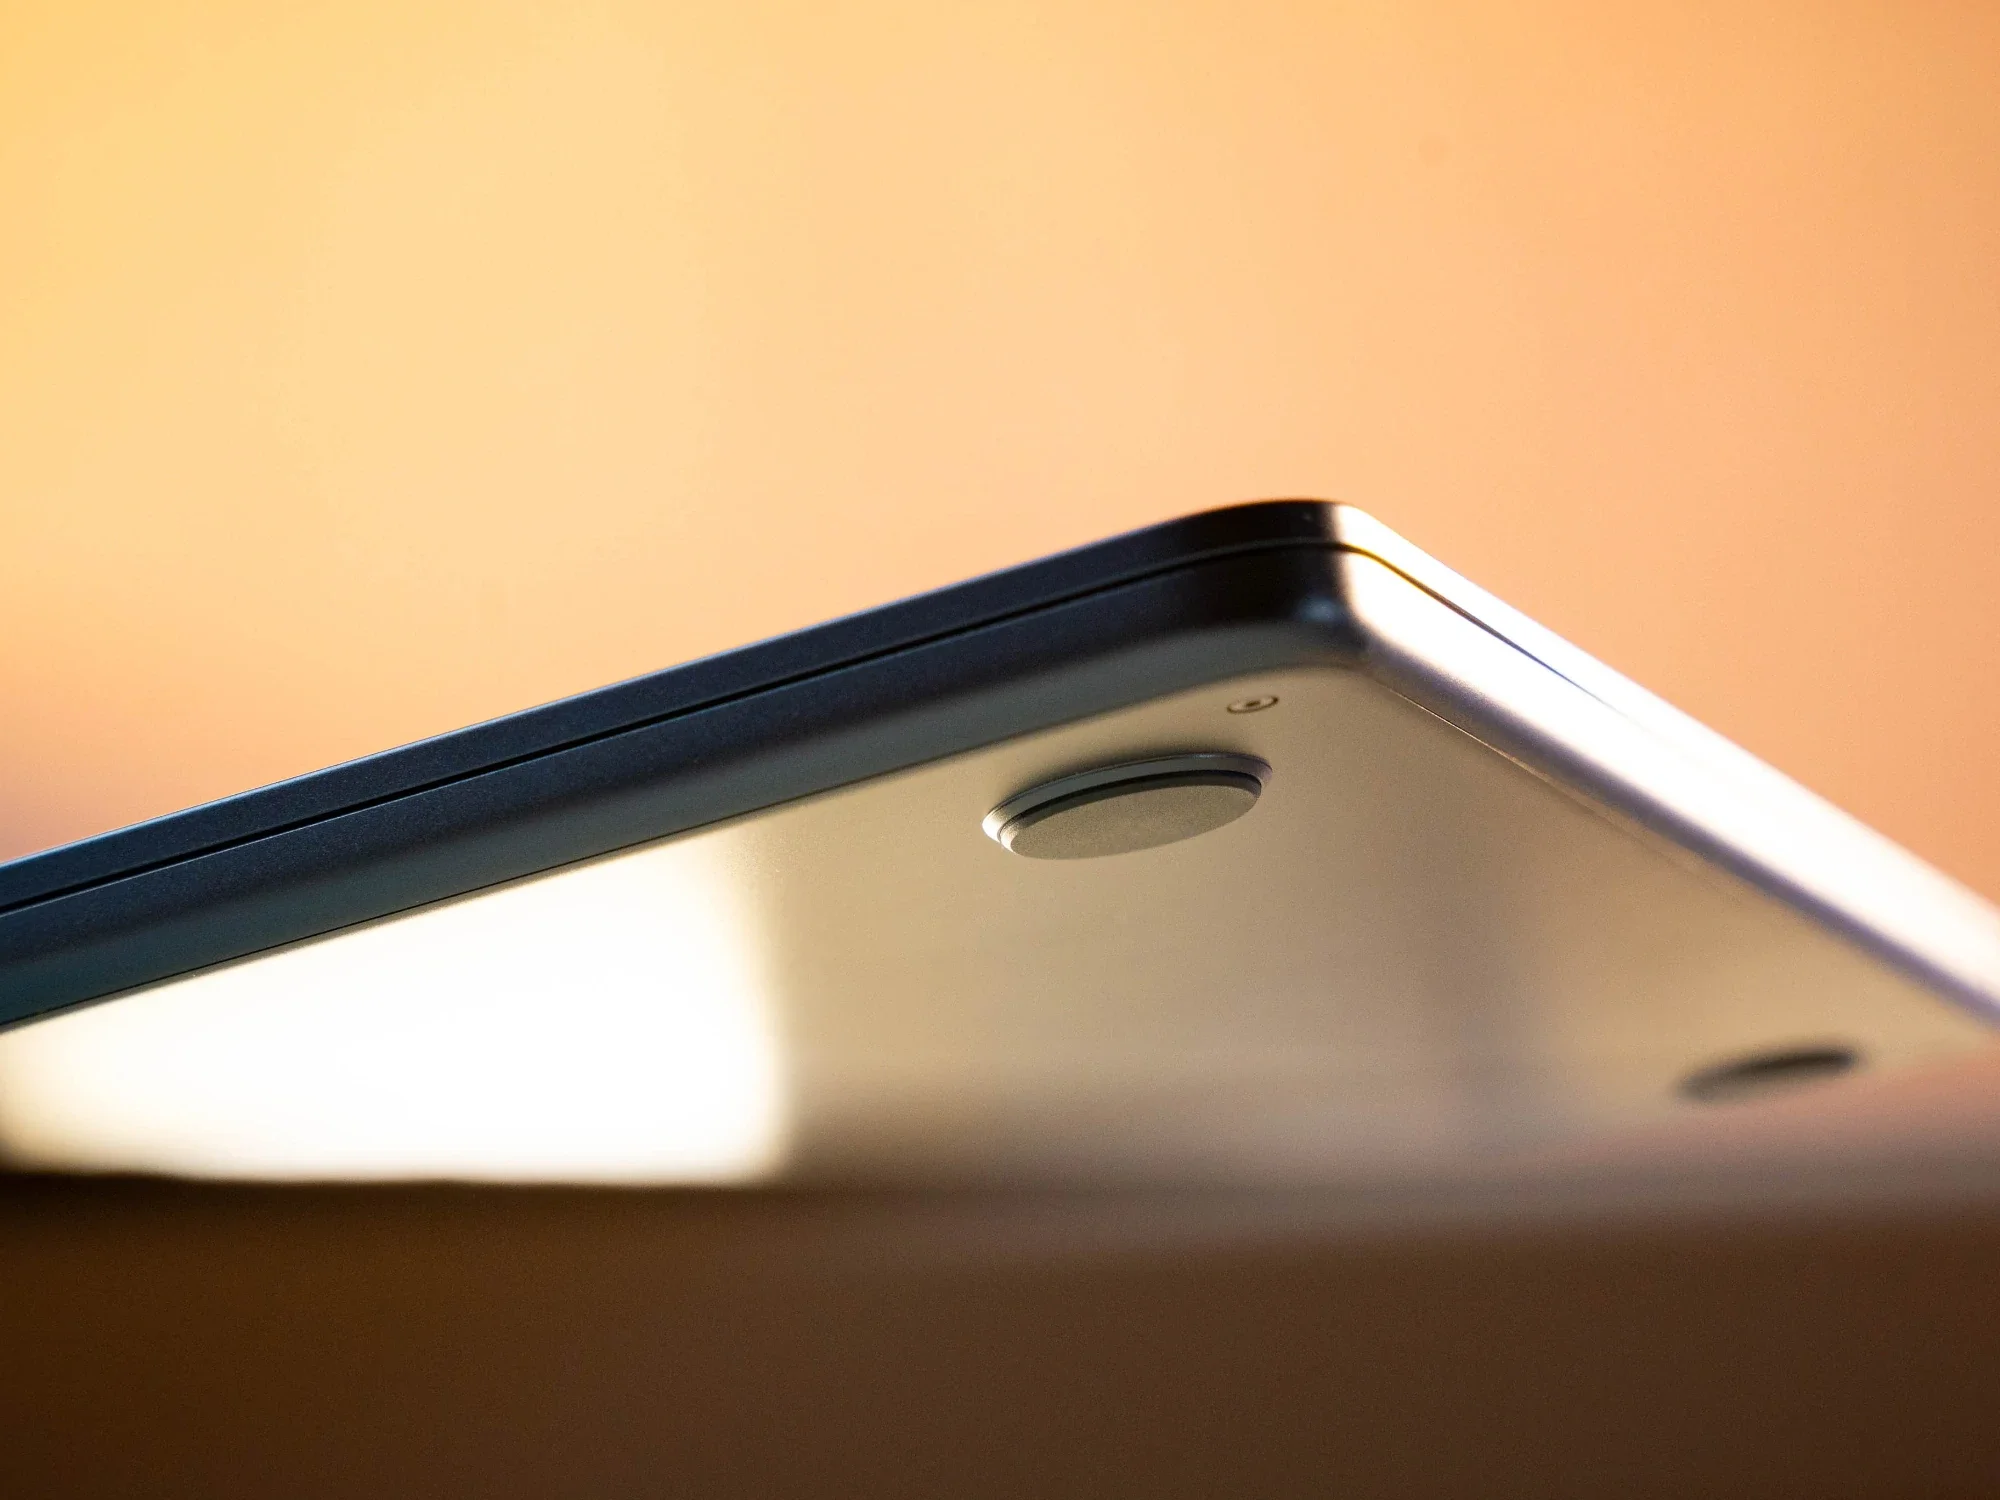 #MacBook Air im Test: Was kann das brandneue Apple-Ultrabook?